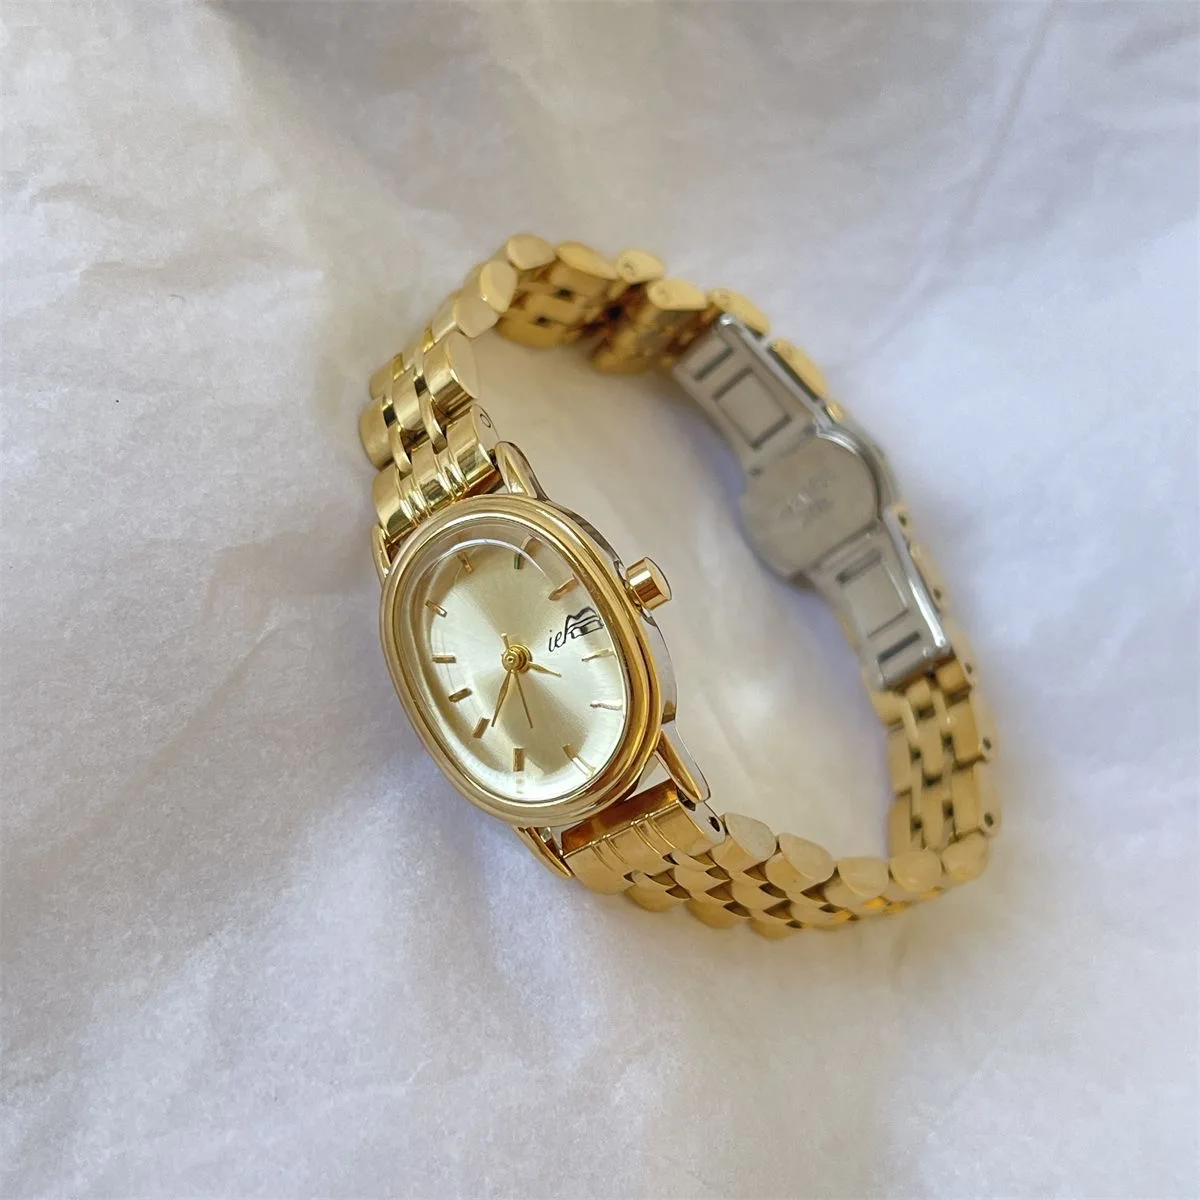 Frauen Quarzuhr Luxus römische Ziffern Zifferblatt Uhr Vintage ovale Edelstahl Orologio Reloj Damen Gold Armbanduhr